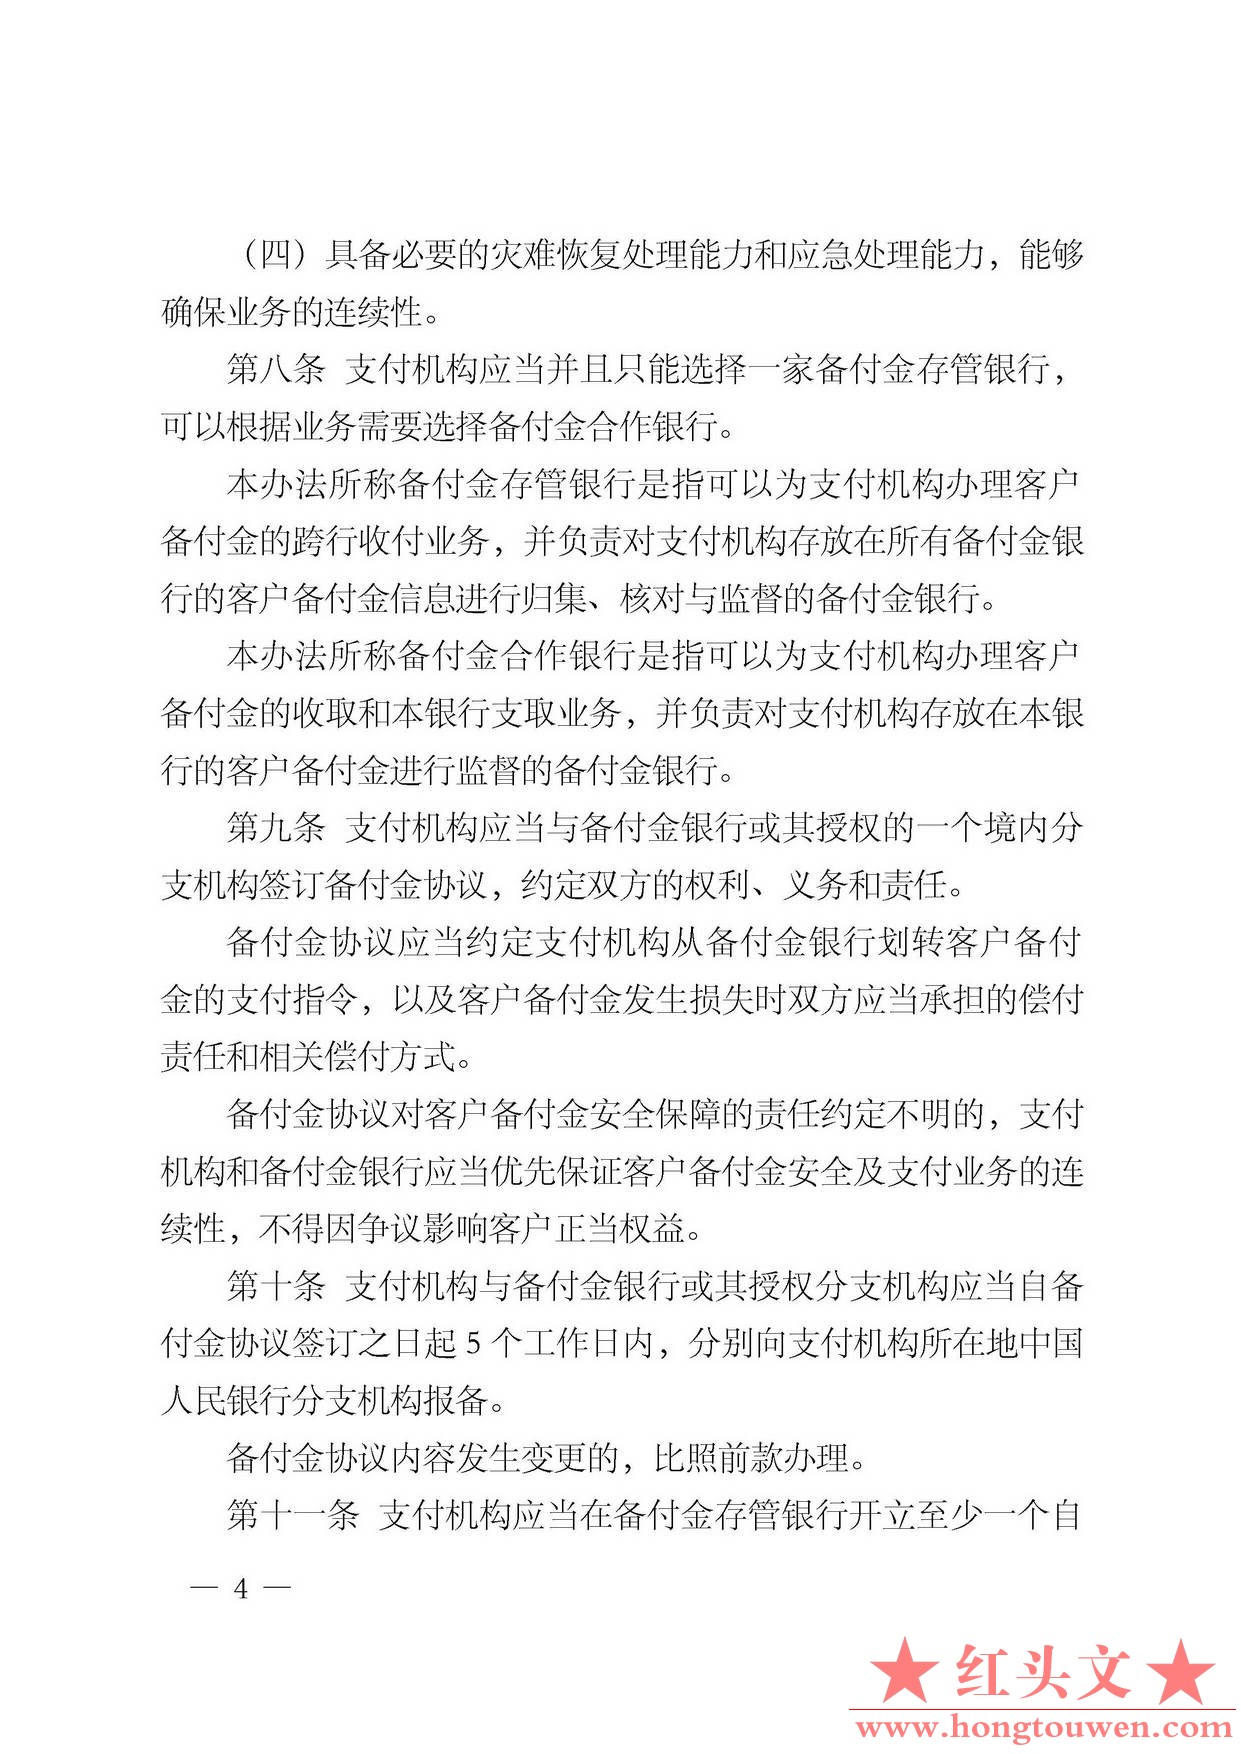 中国人民银行公告[2013]6号-《支付机构客户备付金存管办法》_页面_04.jpg.jpg